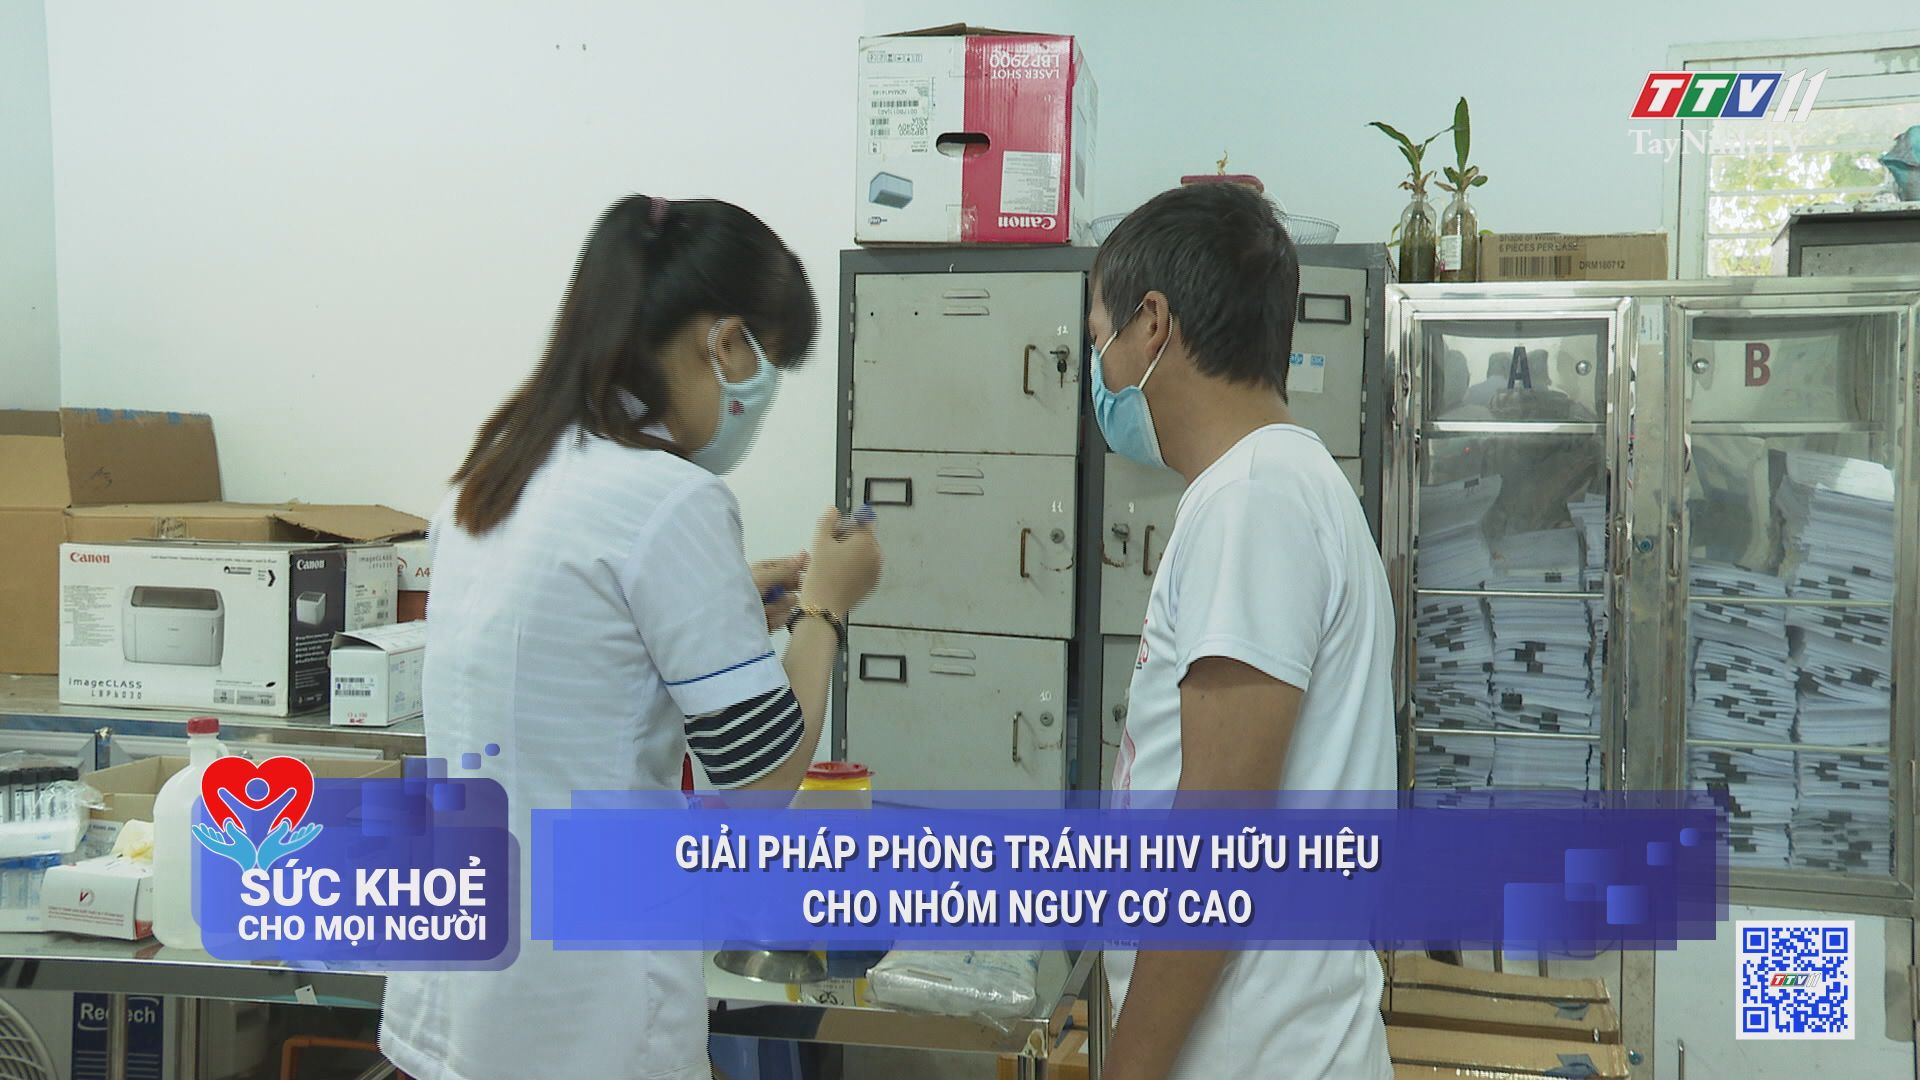 Giải pháp phòng tránh HIV hữu hiệu cho nhóm nguy cơ cao | SỨC KHỎE CHO MỌI NGƯỜI | TayNinhTV